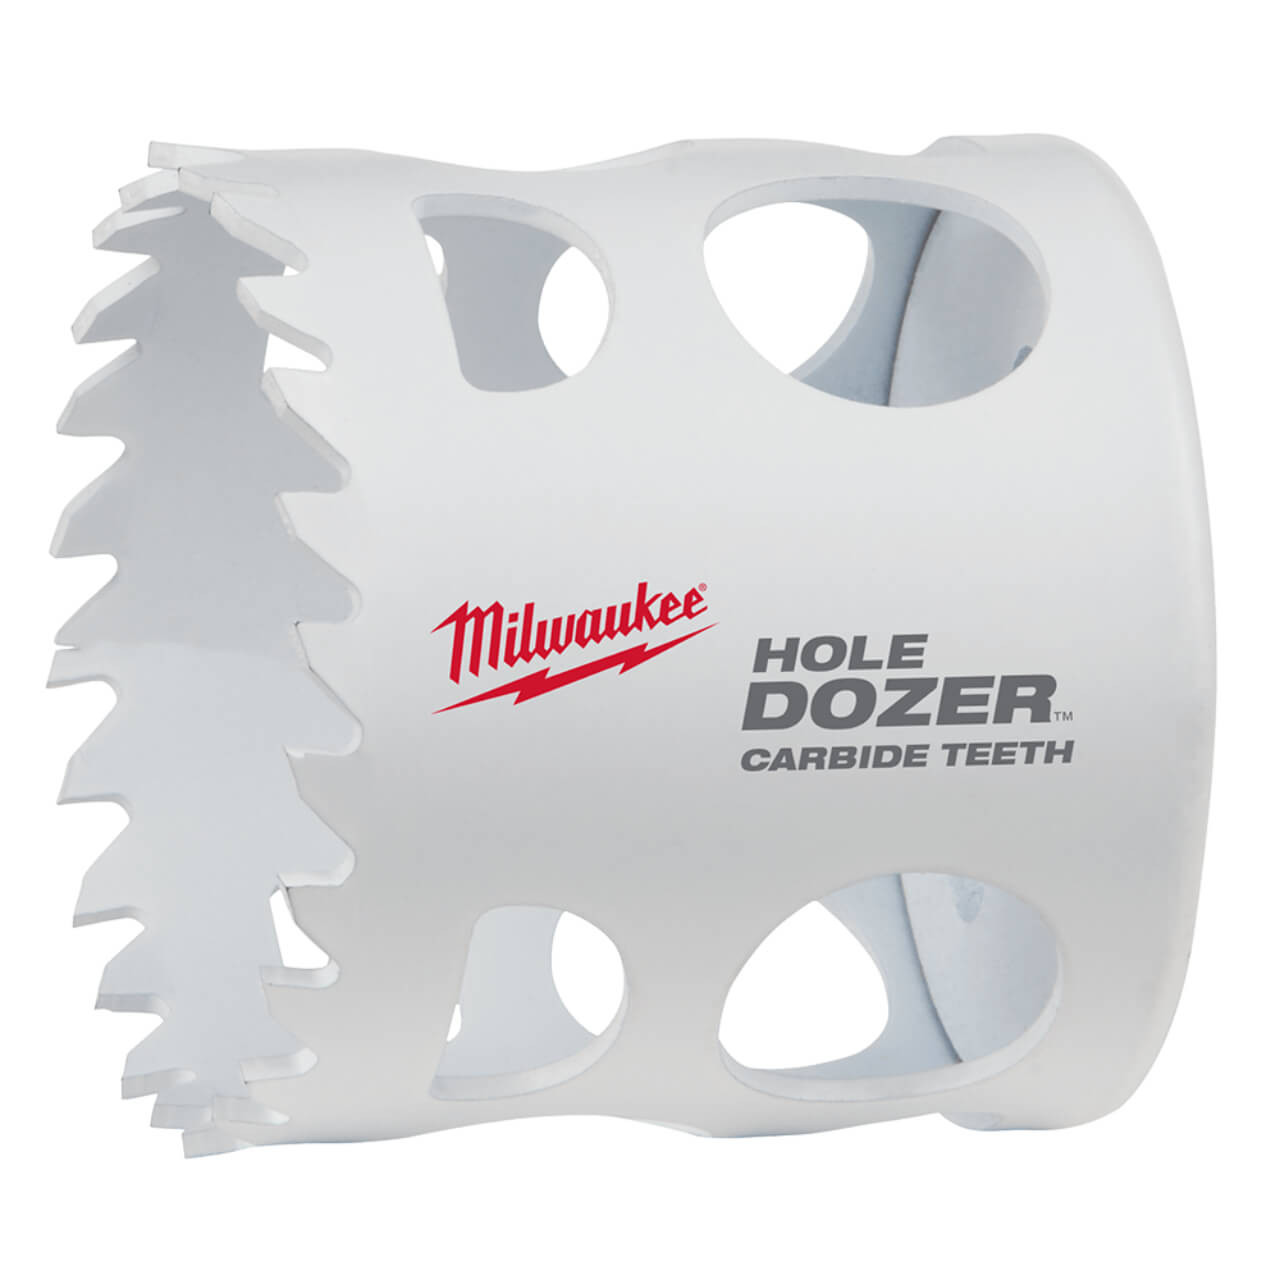 Milwaukee Hole Dozer 44mm (1-3/4) Hole Saw With Carbide Teeth